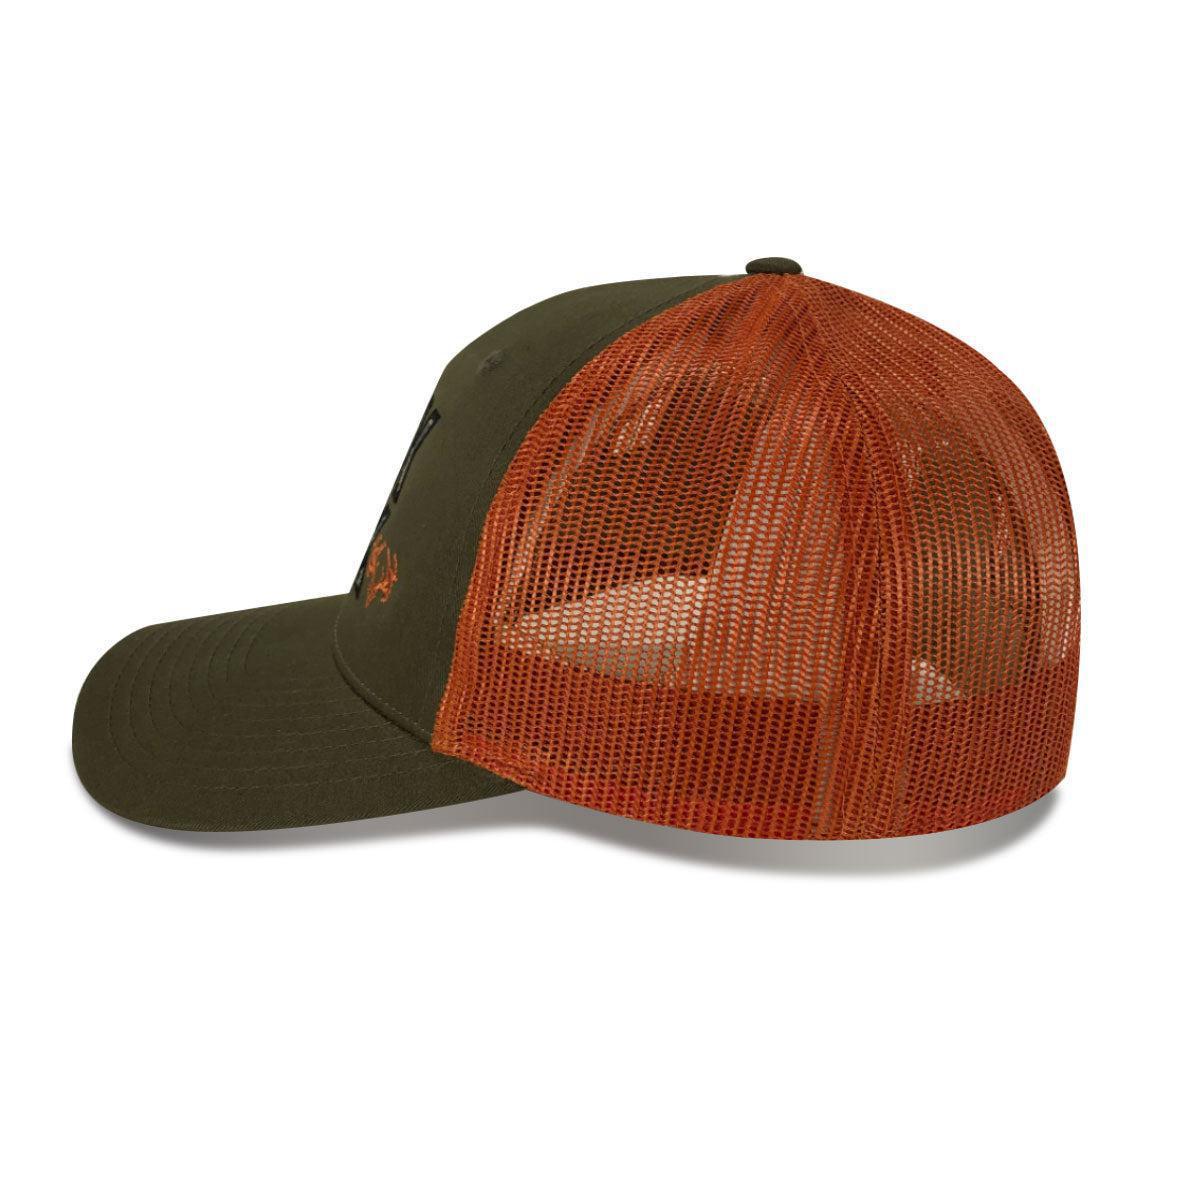 The Jaffa Snapback Trucker Hat